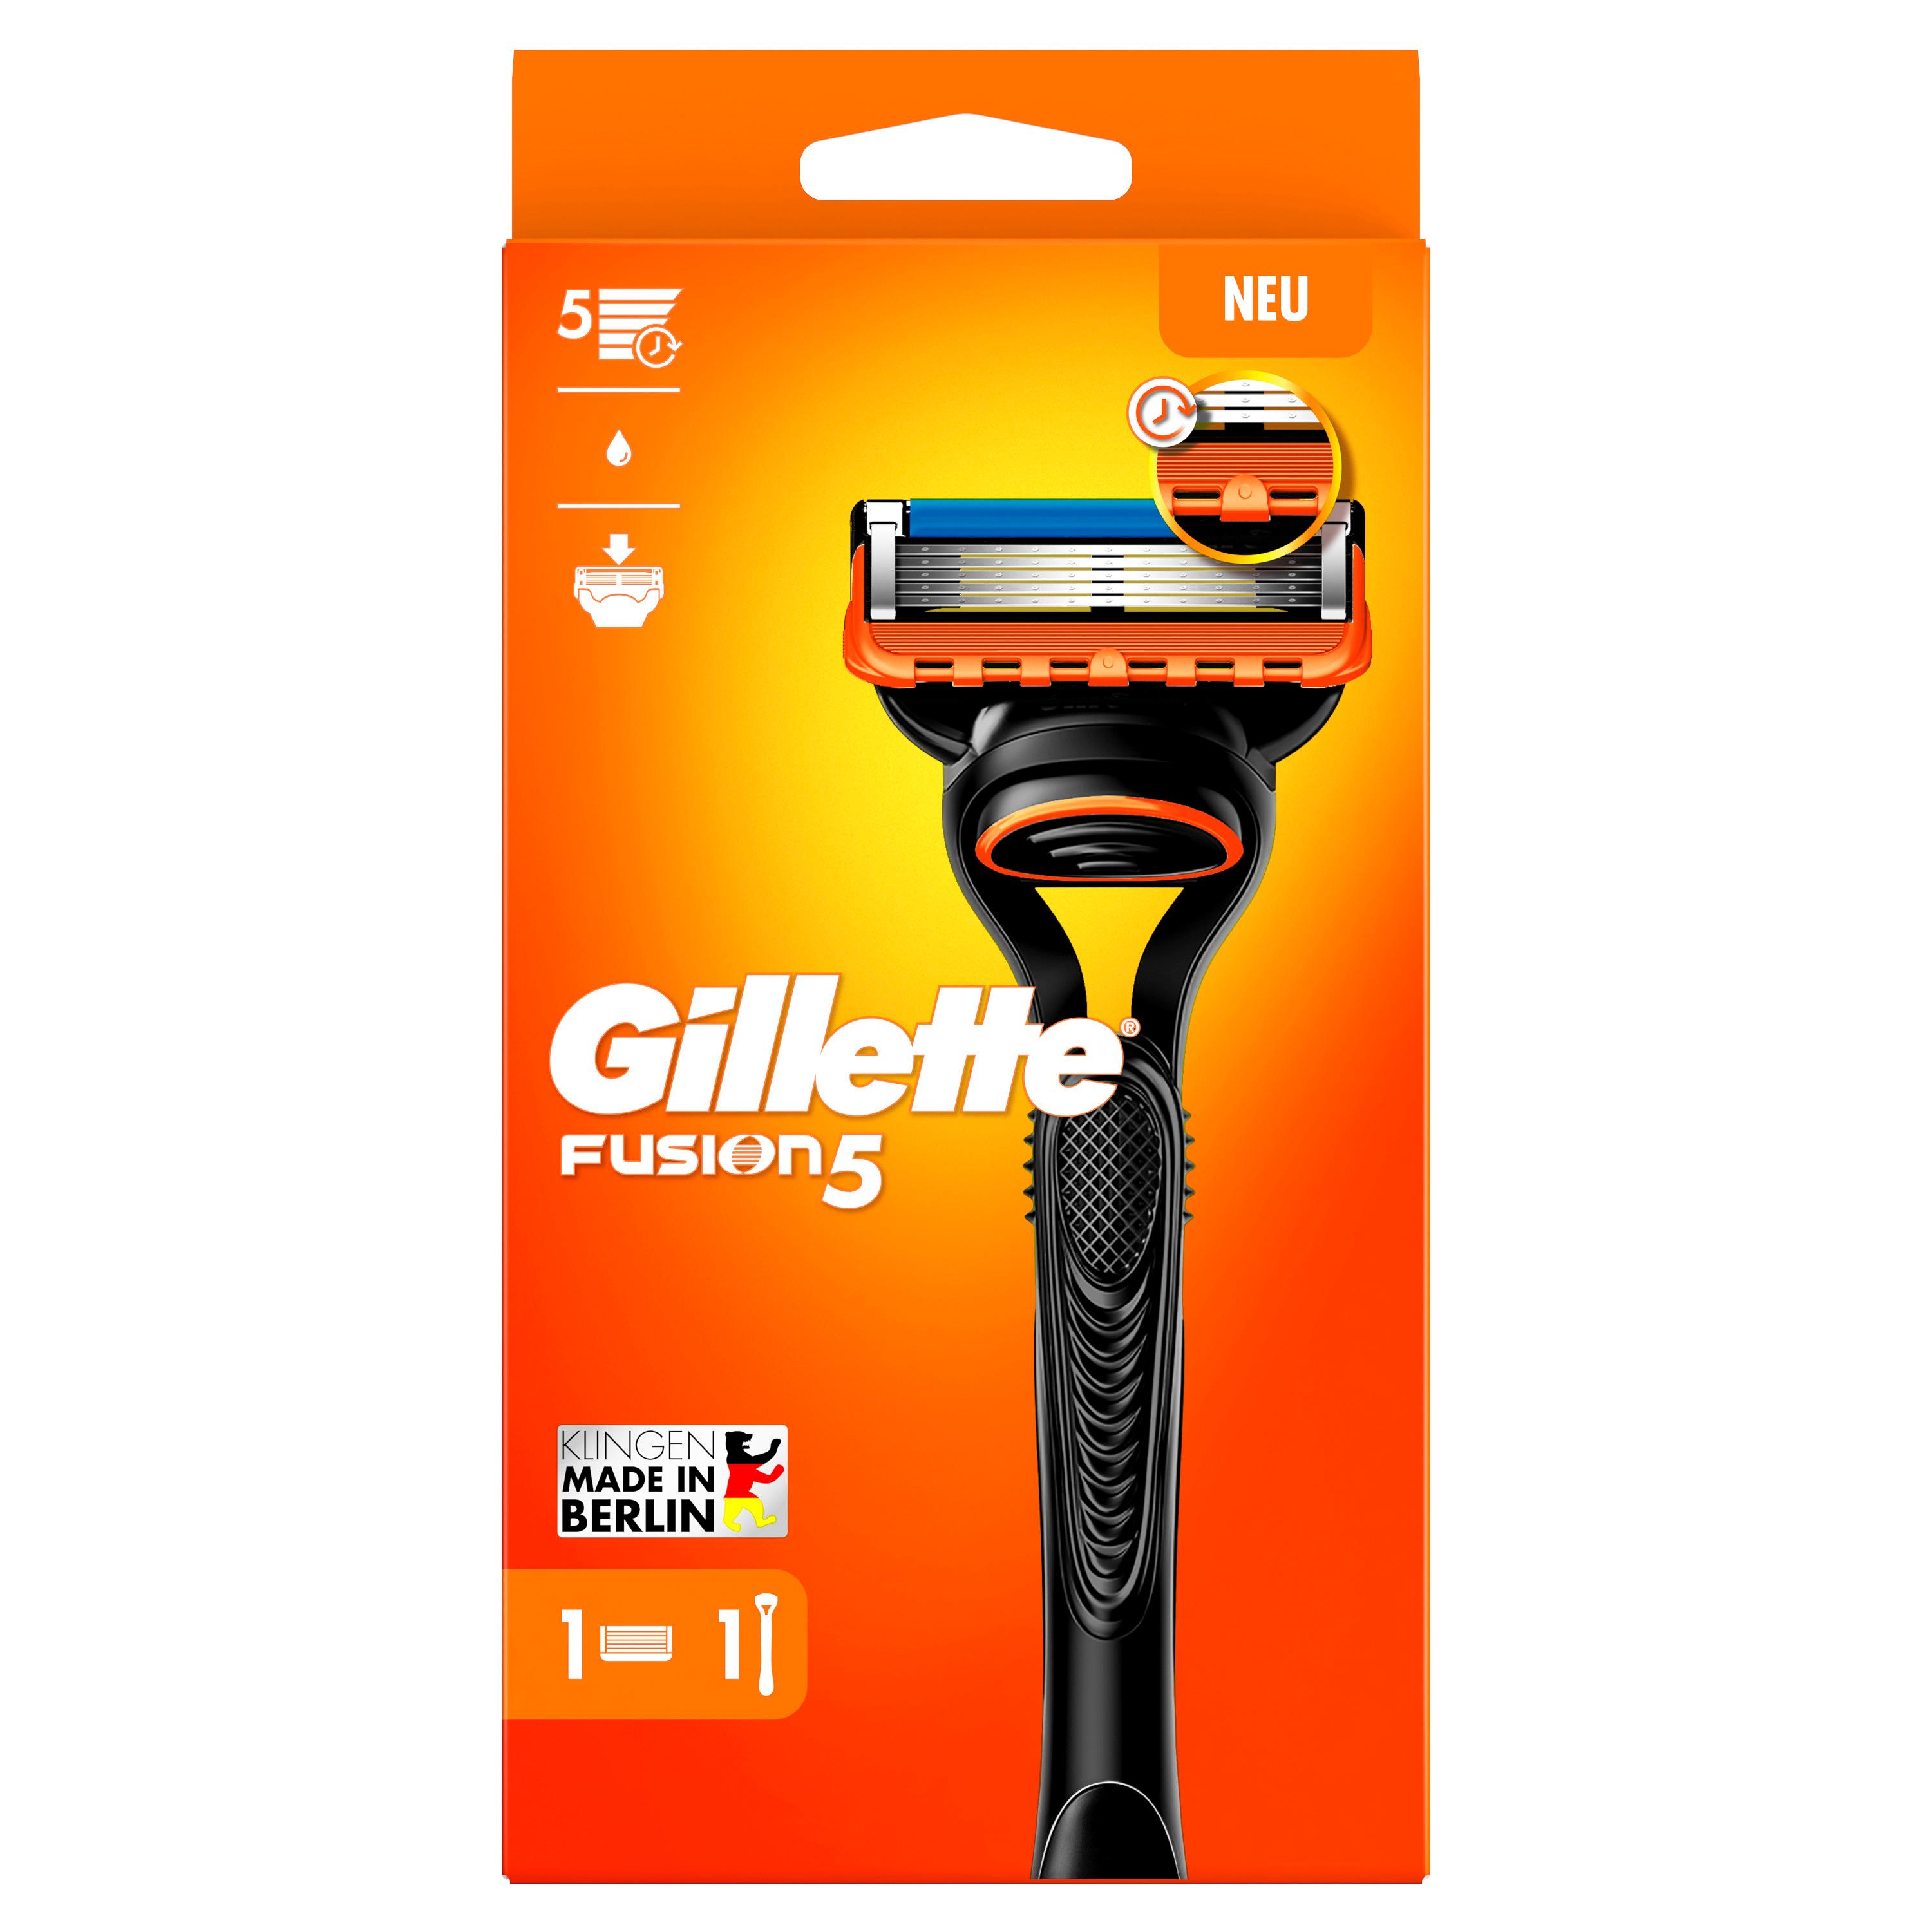 Gillette - Fusion5 razor with 1 blade SmartBox